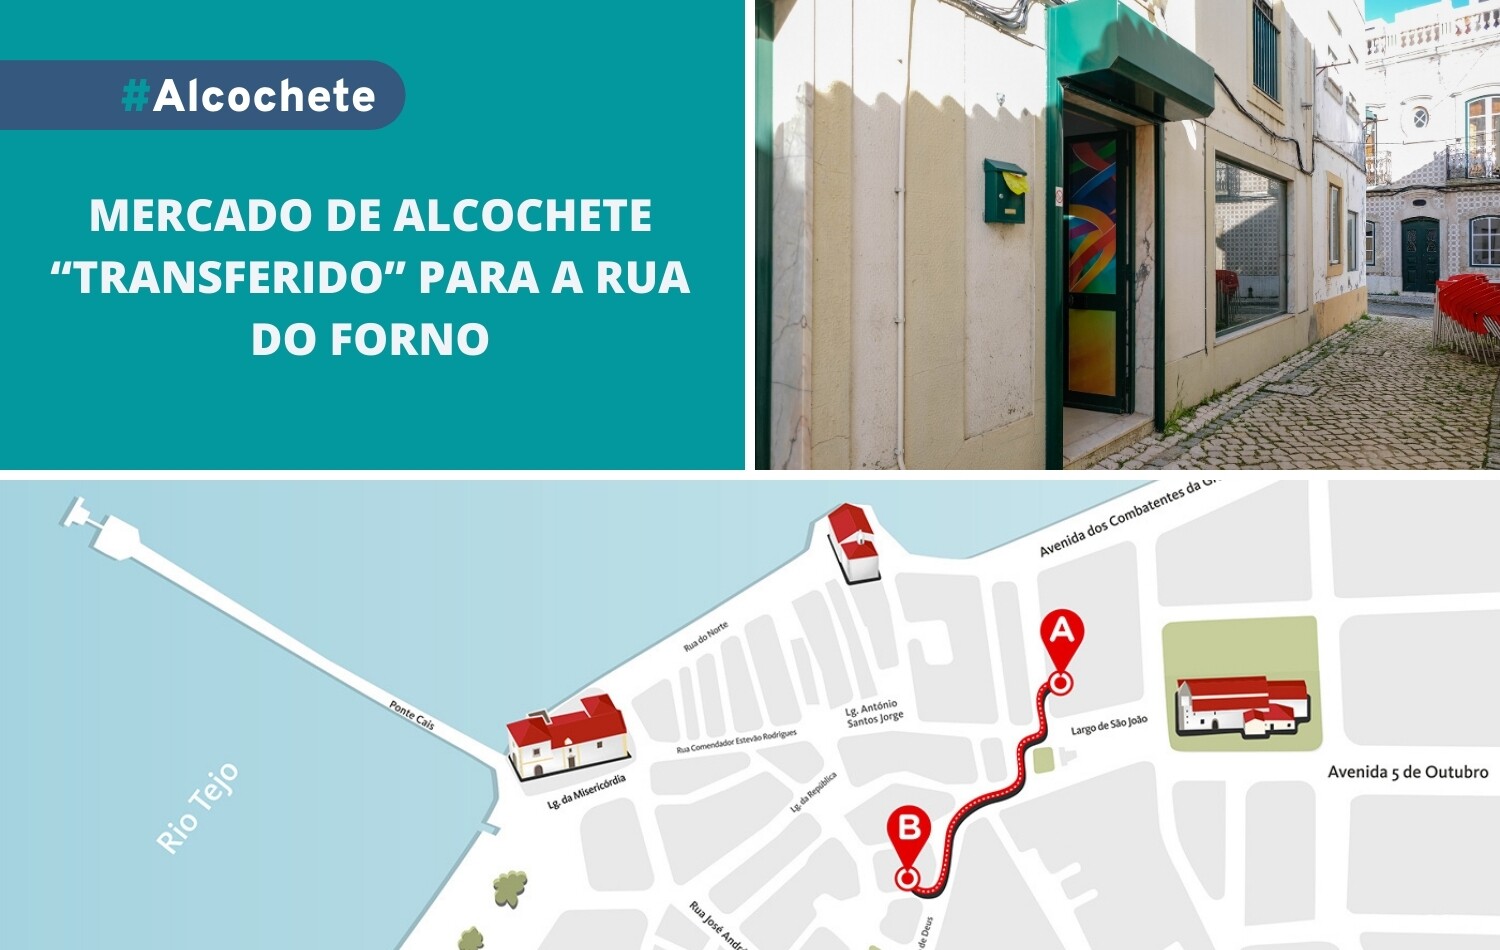 Mercado de Alcochete “transferido” para a rua do Forno